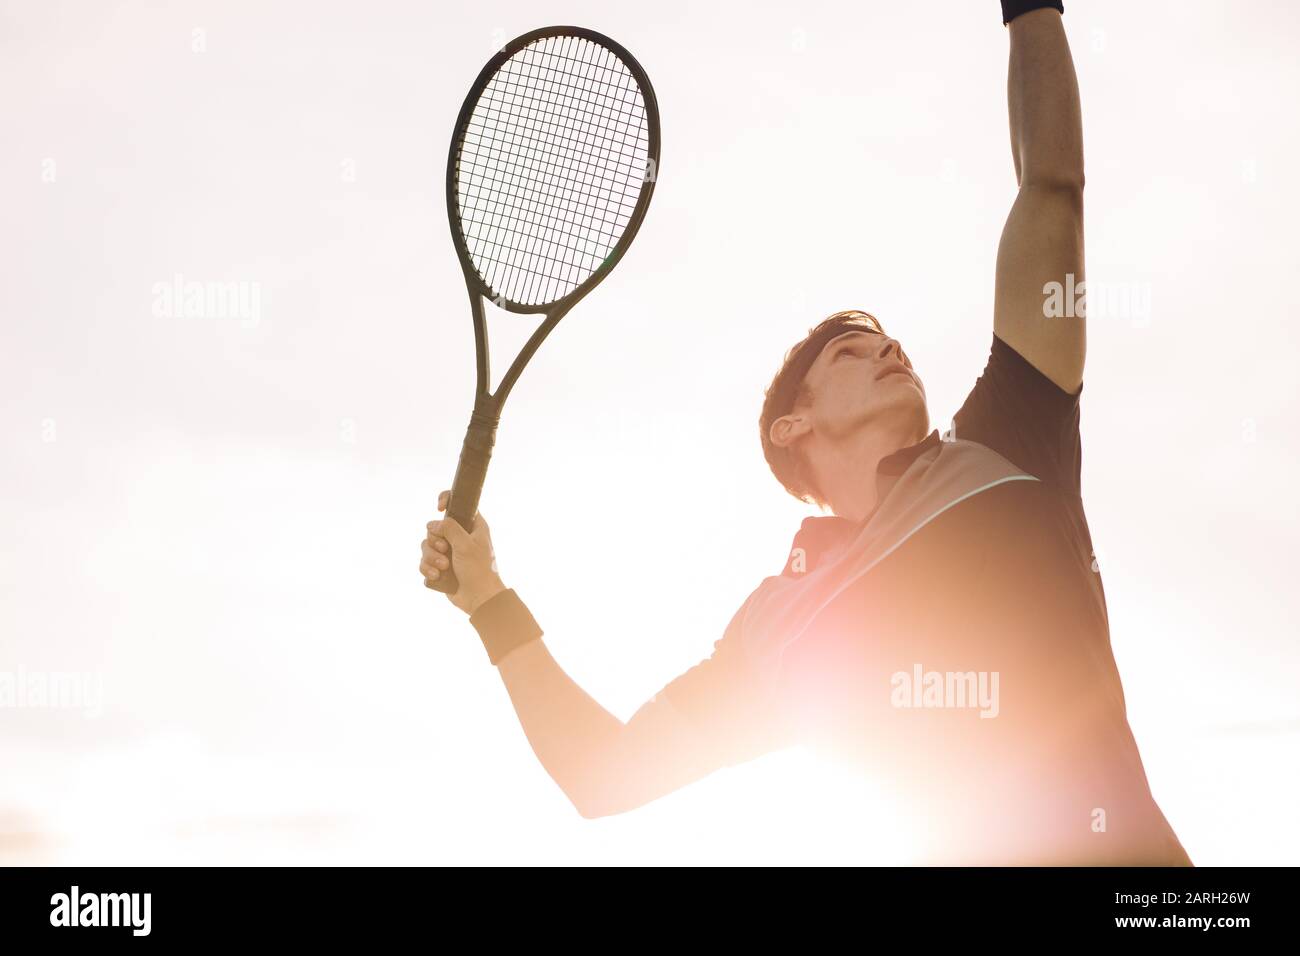 Un jeune joueur de tennis sur le point de frapper le ballon une journée ensoleillée. Un joueur de tennis professionnel fait un service à la lumière du soleil de derrière. Banque D'Images